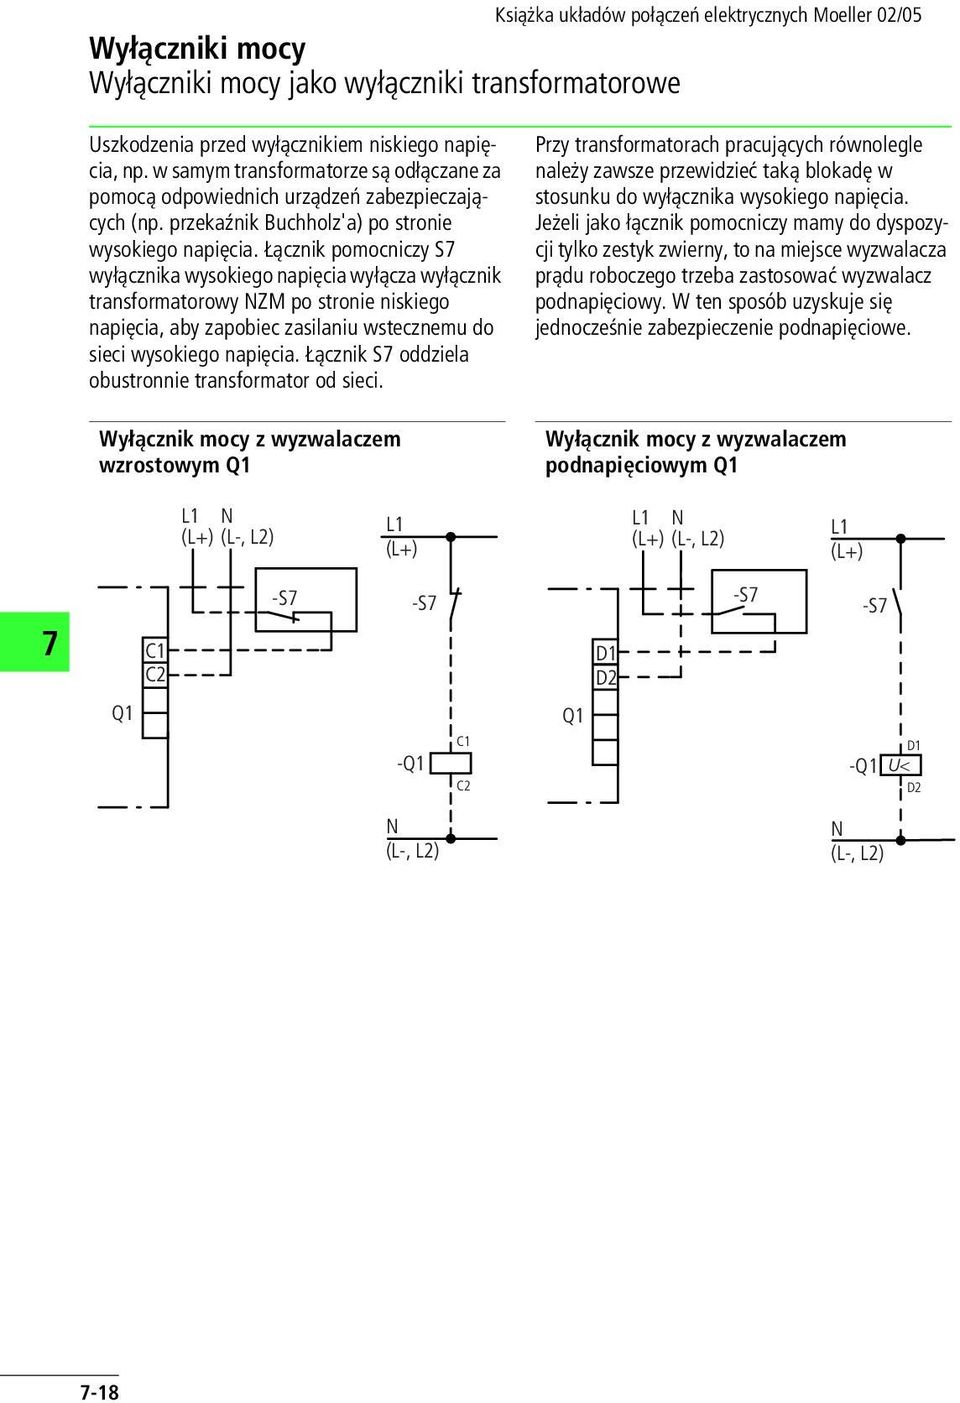 Łącznik pomocniczy S wyłącznika wysokiego napięcia wyłącza wyłącznik transformatorowy ZM po stronie niskiego napięcia, aby zapobiec zasilaniu wstecznemu do sieci wysokiego napięcia.